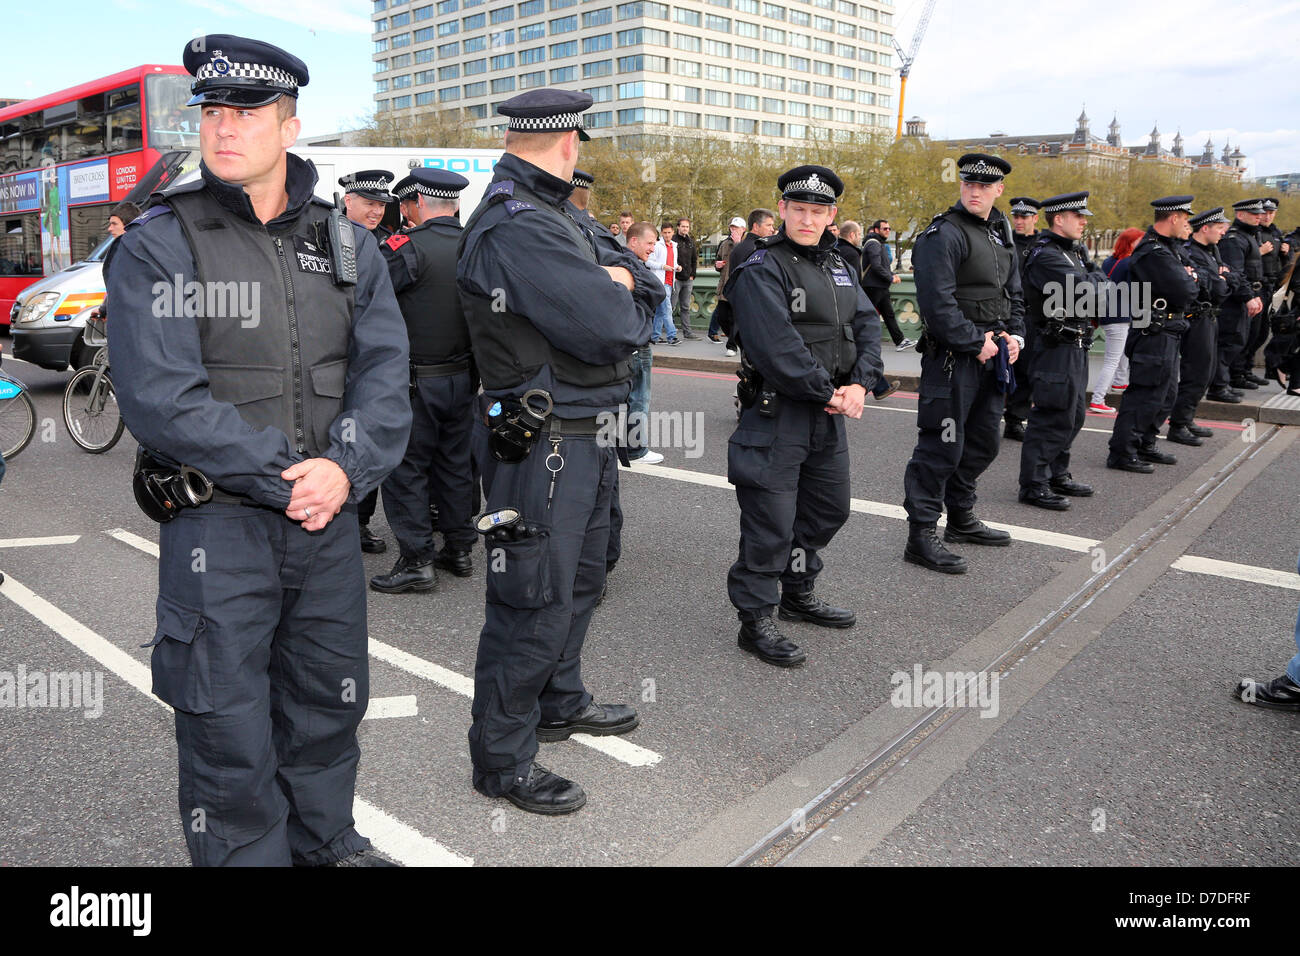 Londres, Reino Unido. El 4 de mayo de 2013. Los manifestantes bloquearon por la policía en el Reino Unido anónimo anti-austeridad manifestación en el puente de Westminster, Londres, Inglaterra. Crédito: Paul Brown / Alamy Live News Foto de stock